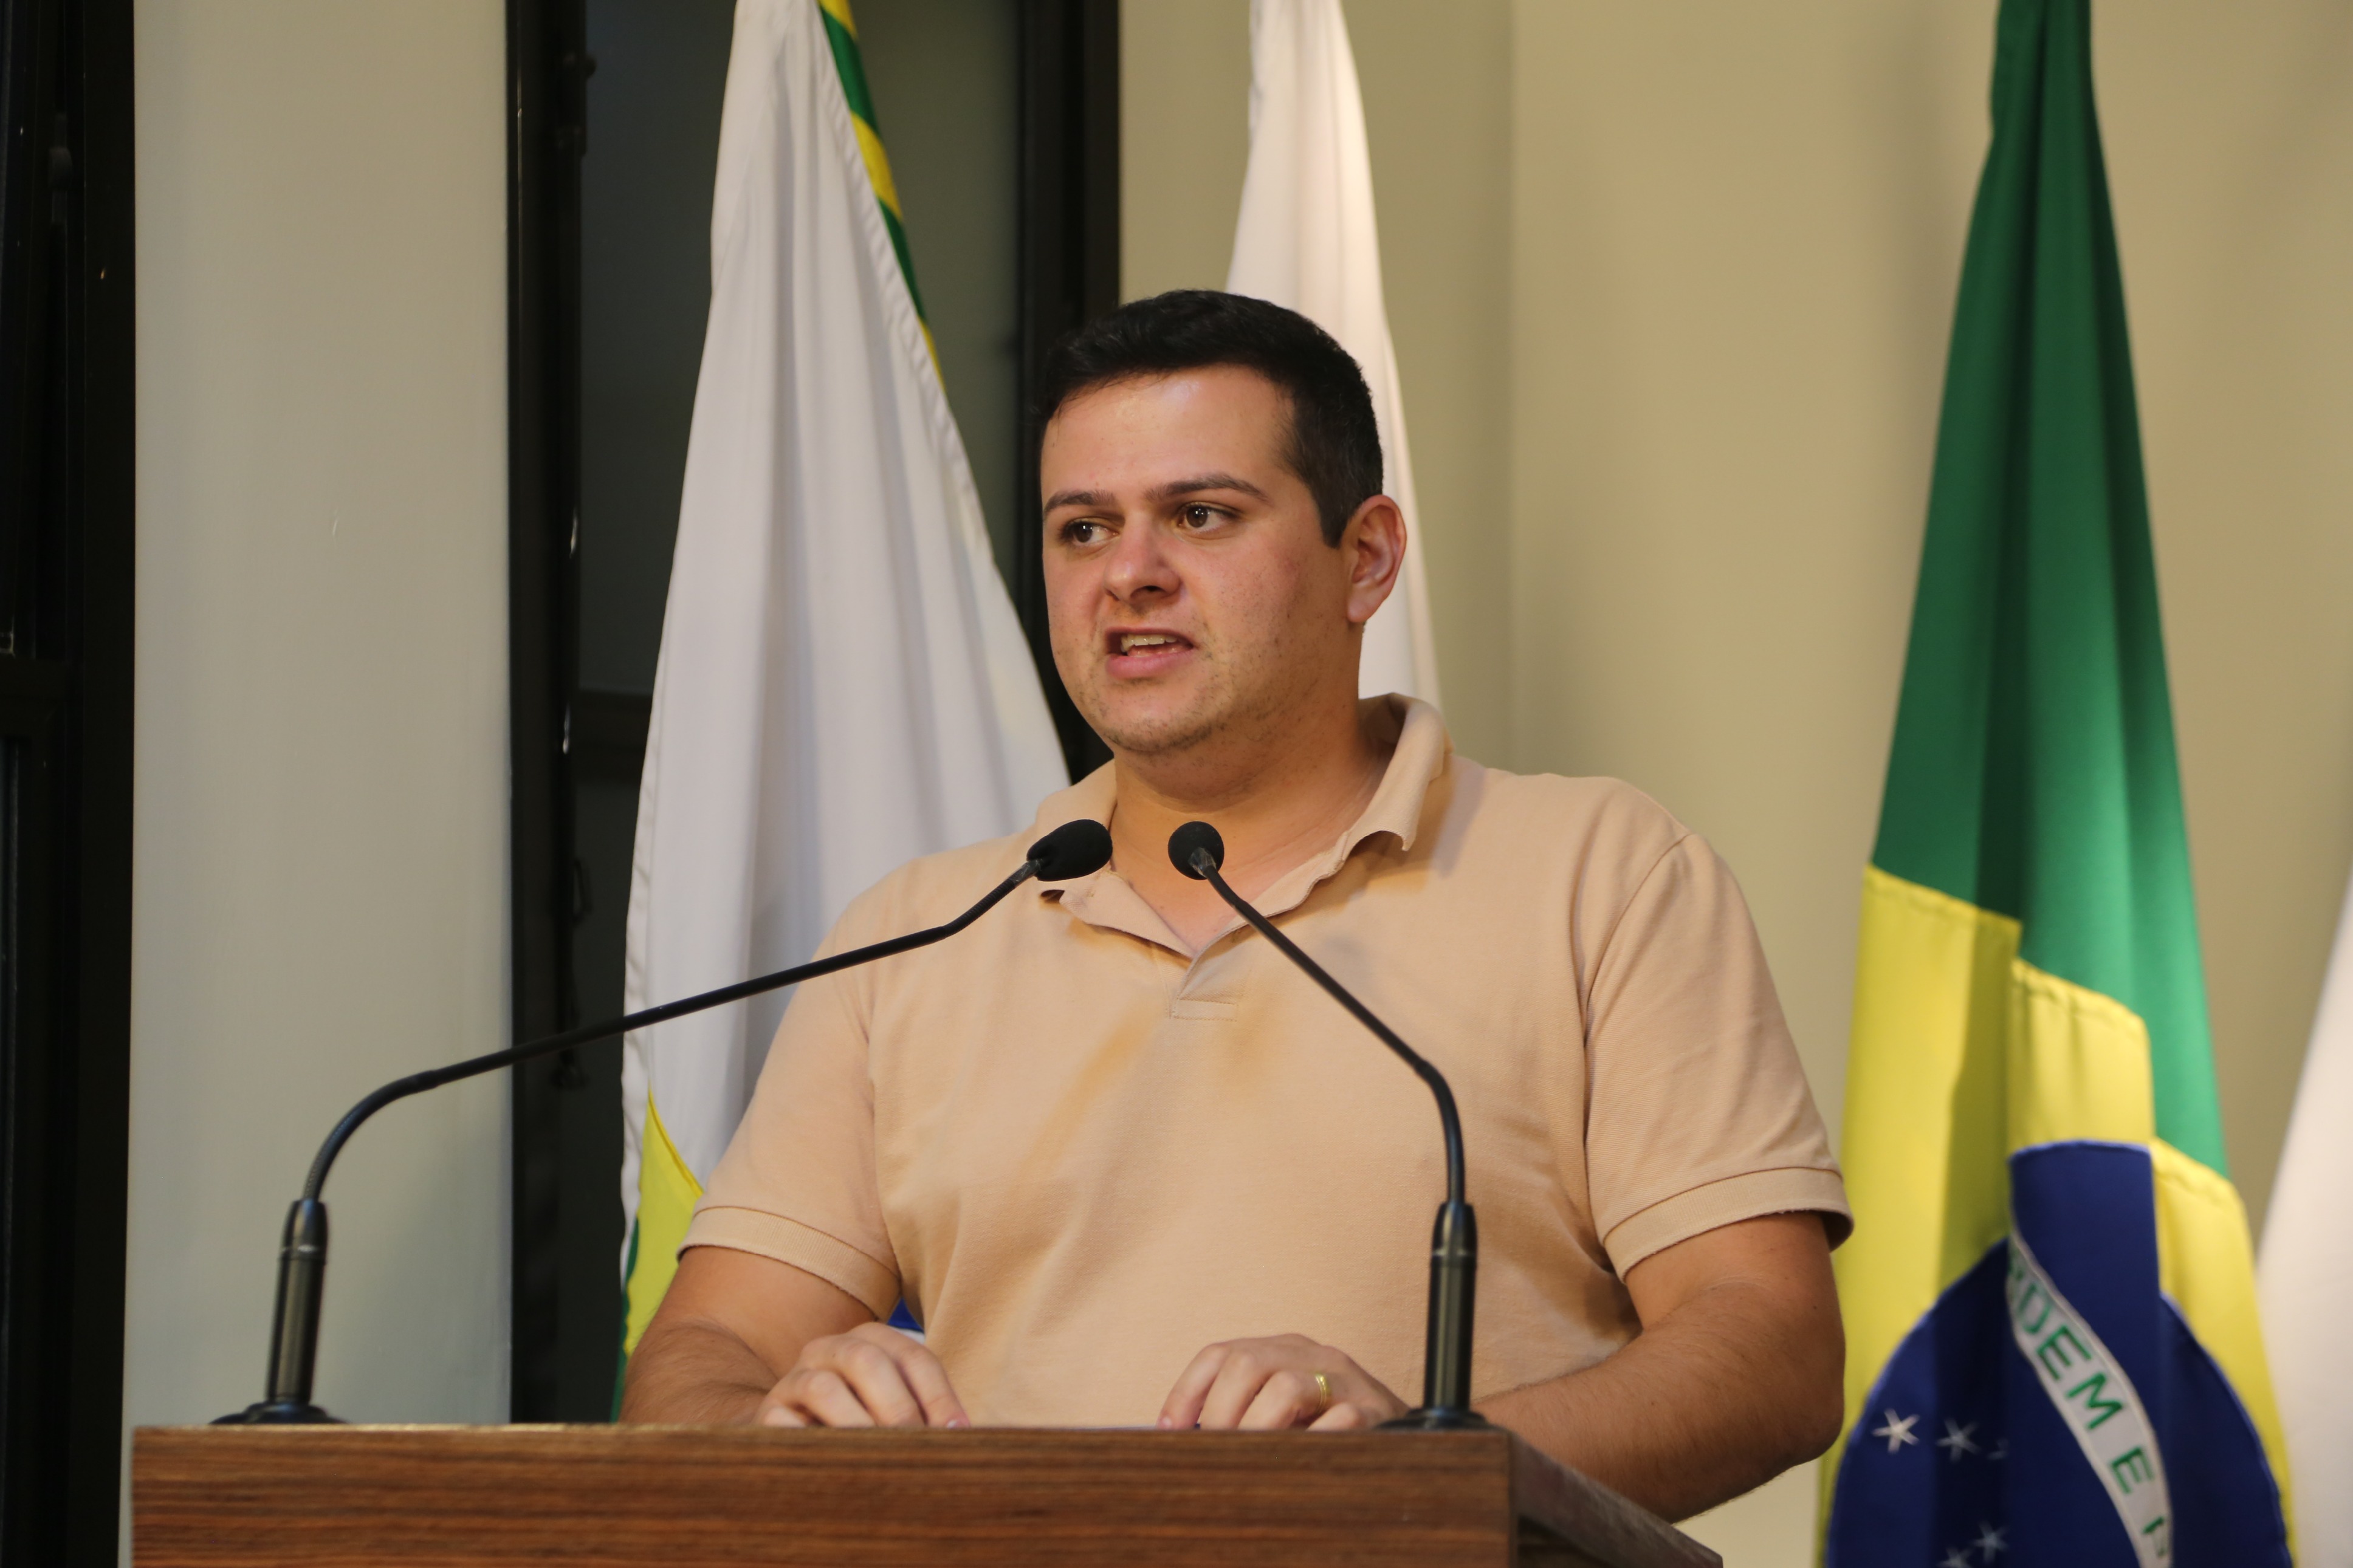 Vereador Rafael Cassimiro (Filho do Zeca do Bar) (PSDB), Vice-Presidente da Câmara Municipal de Viçosa